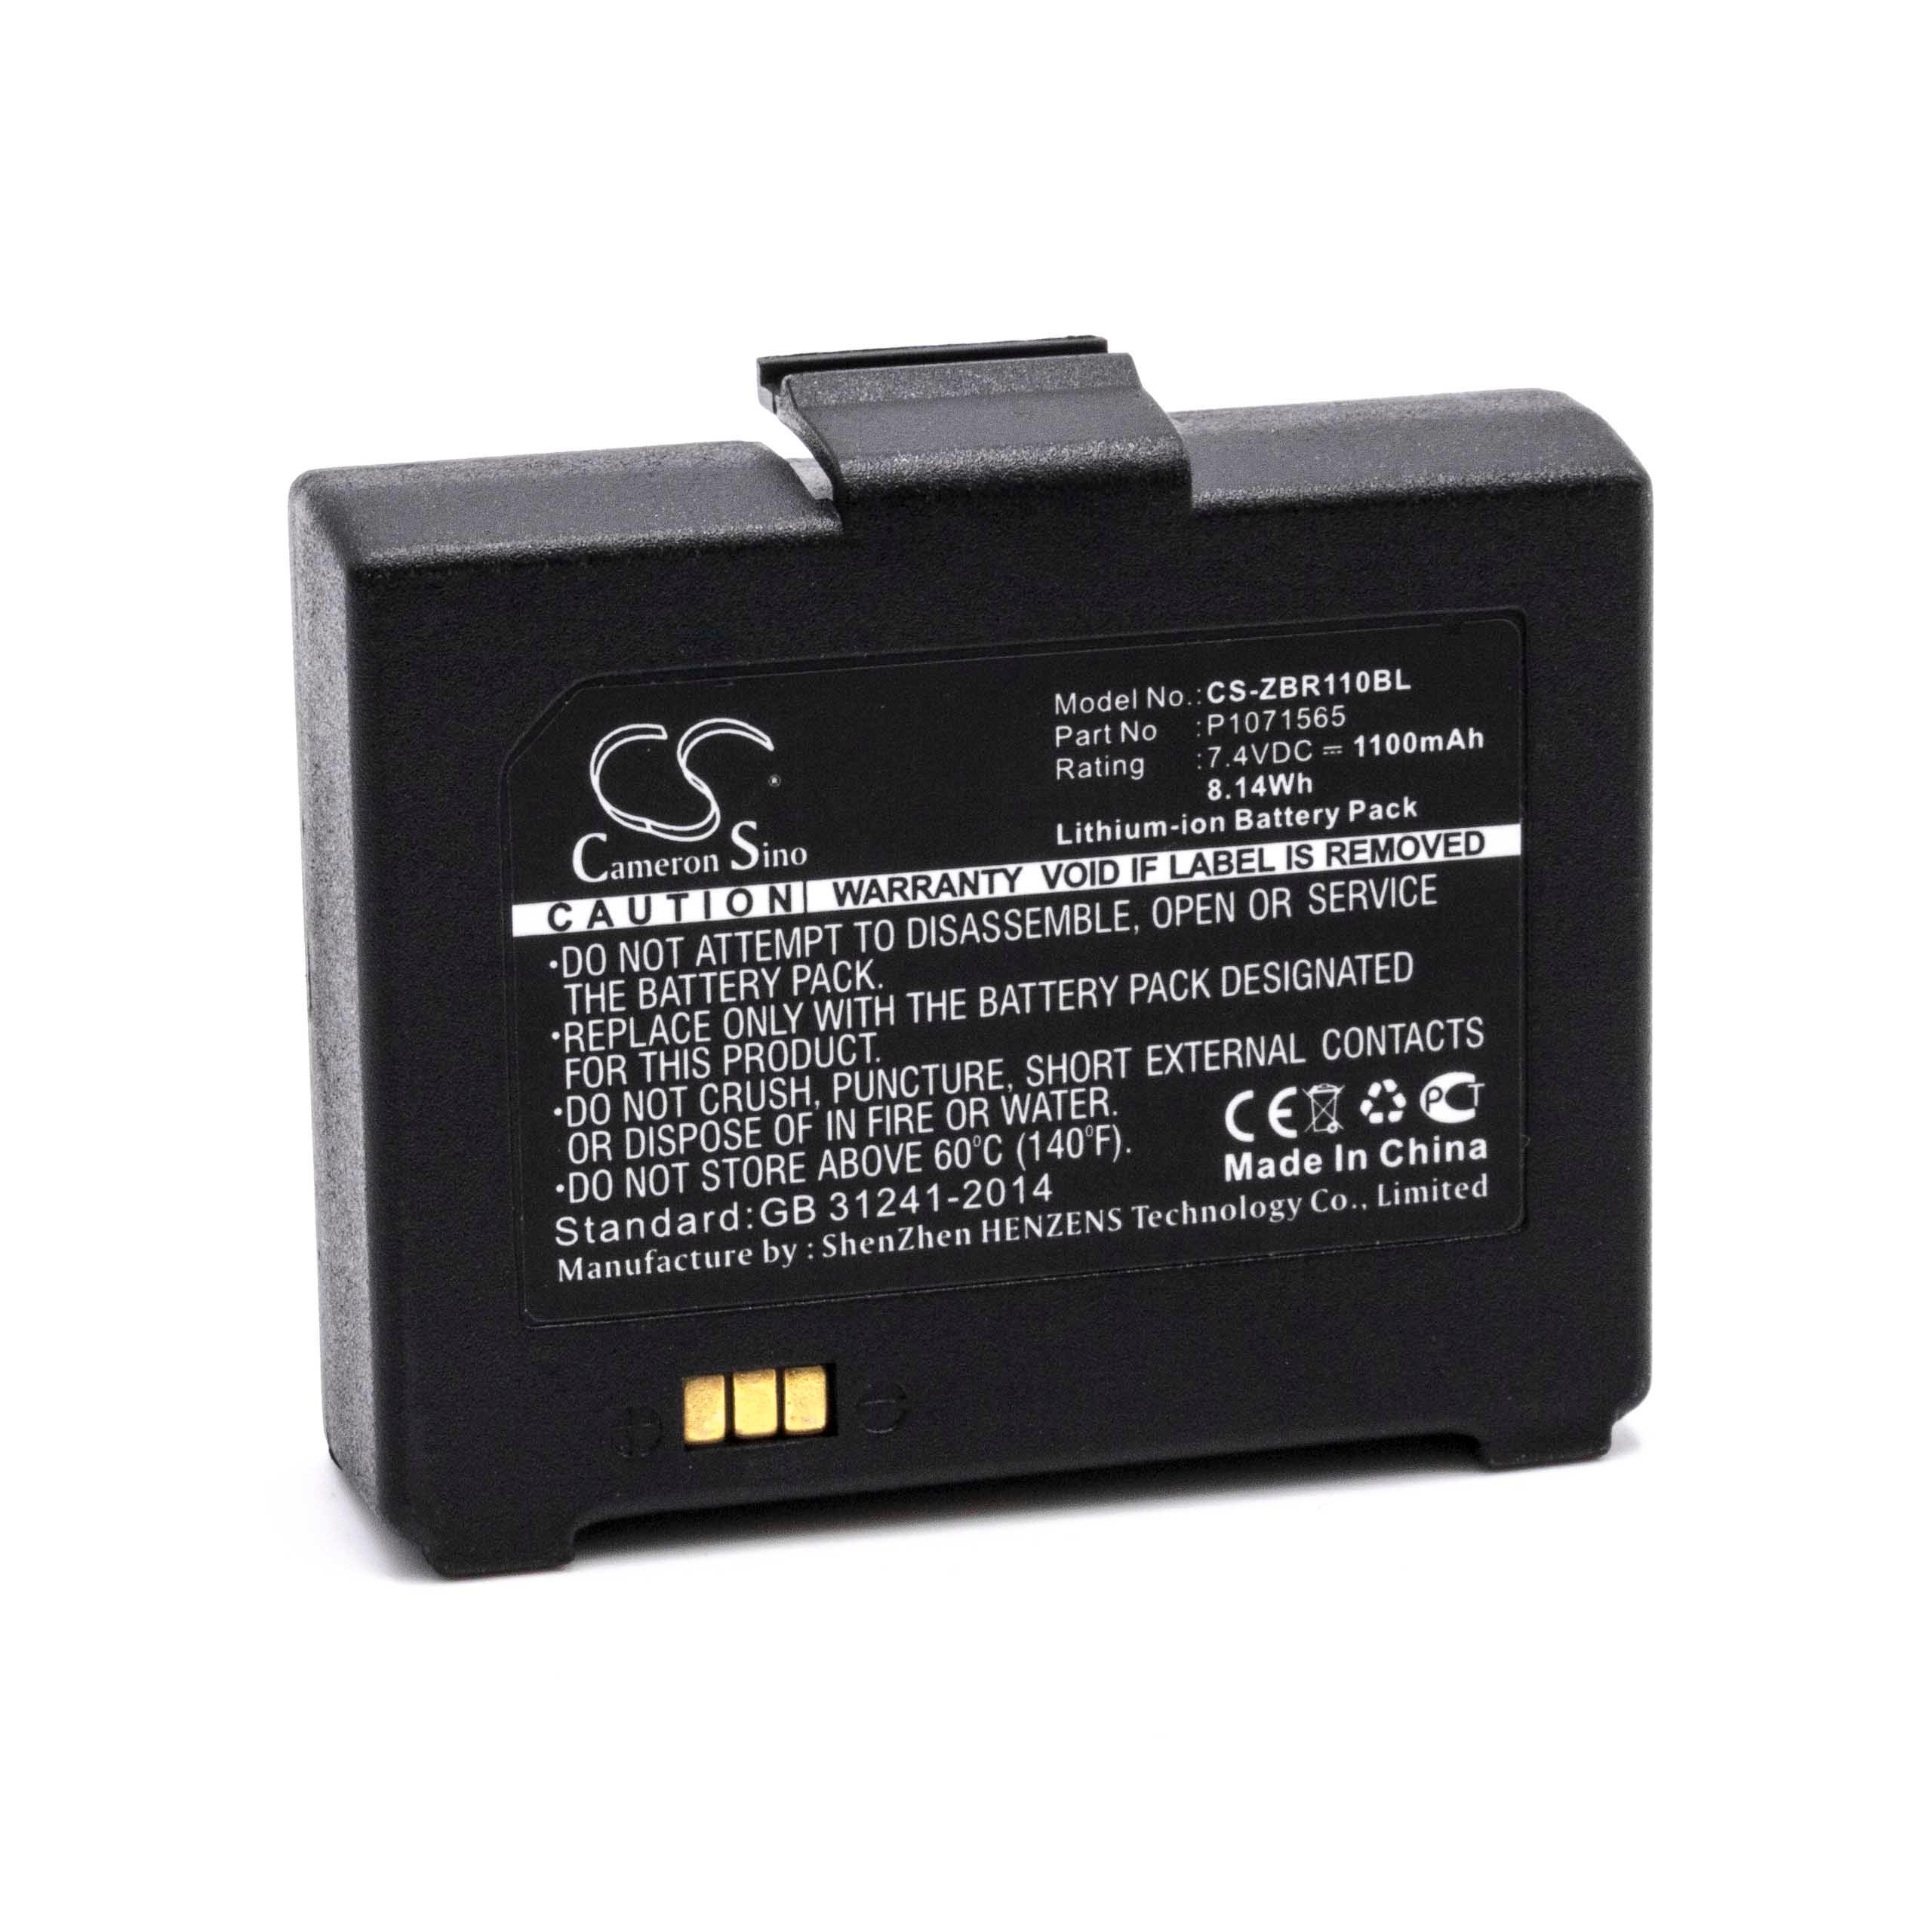 Batterie remplace Bixolon K409-00007A, PBP-R200 pour scanner de code-barre - 1100mAh 7,4V Li-ion